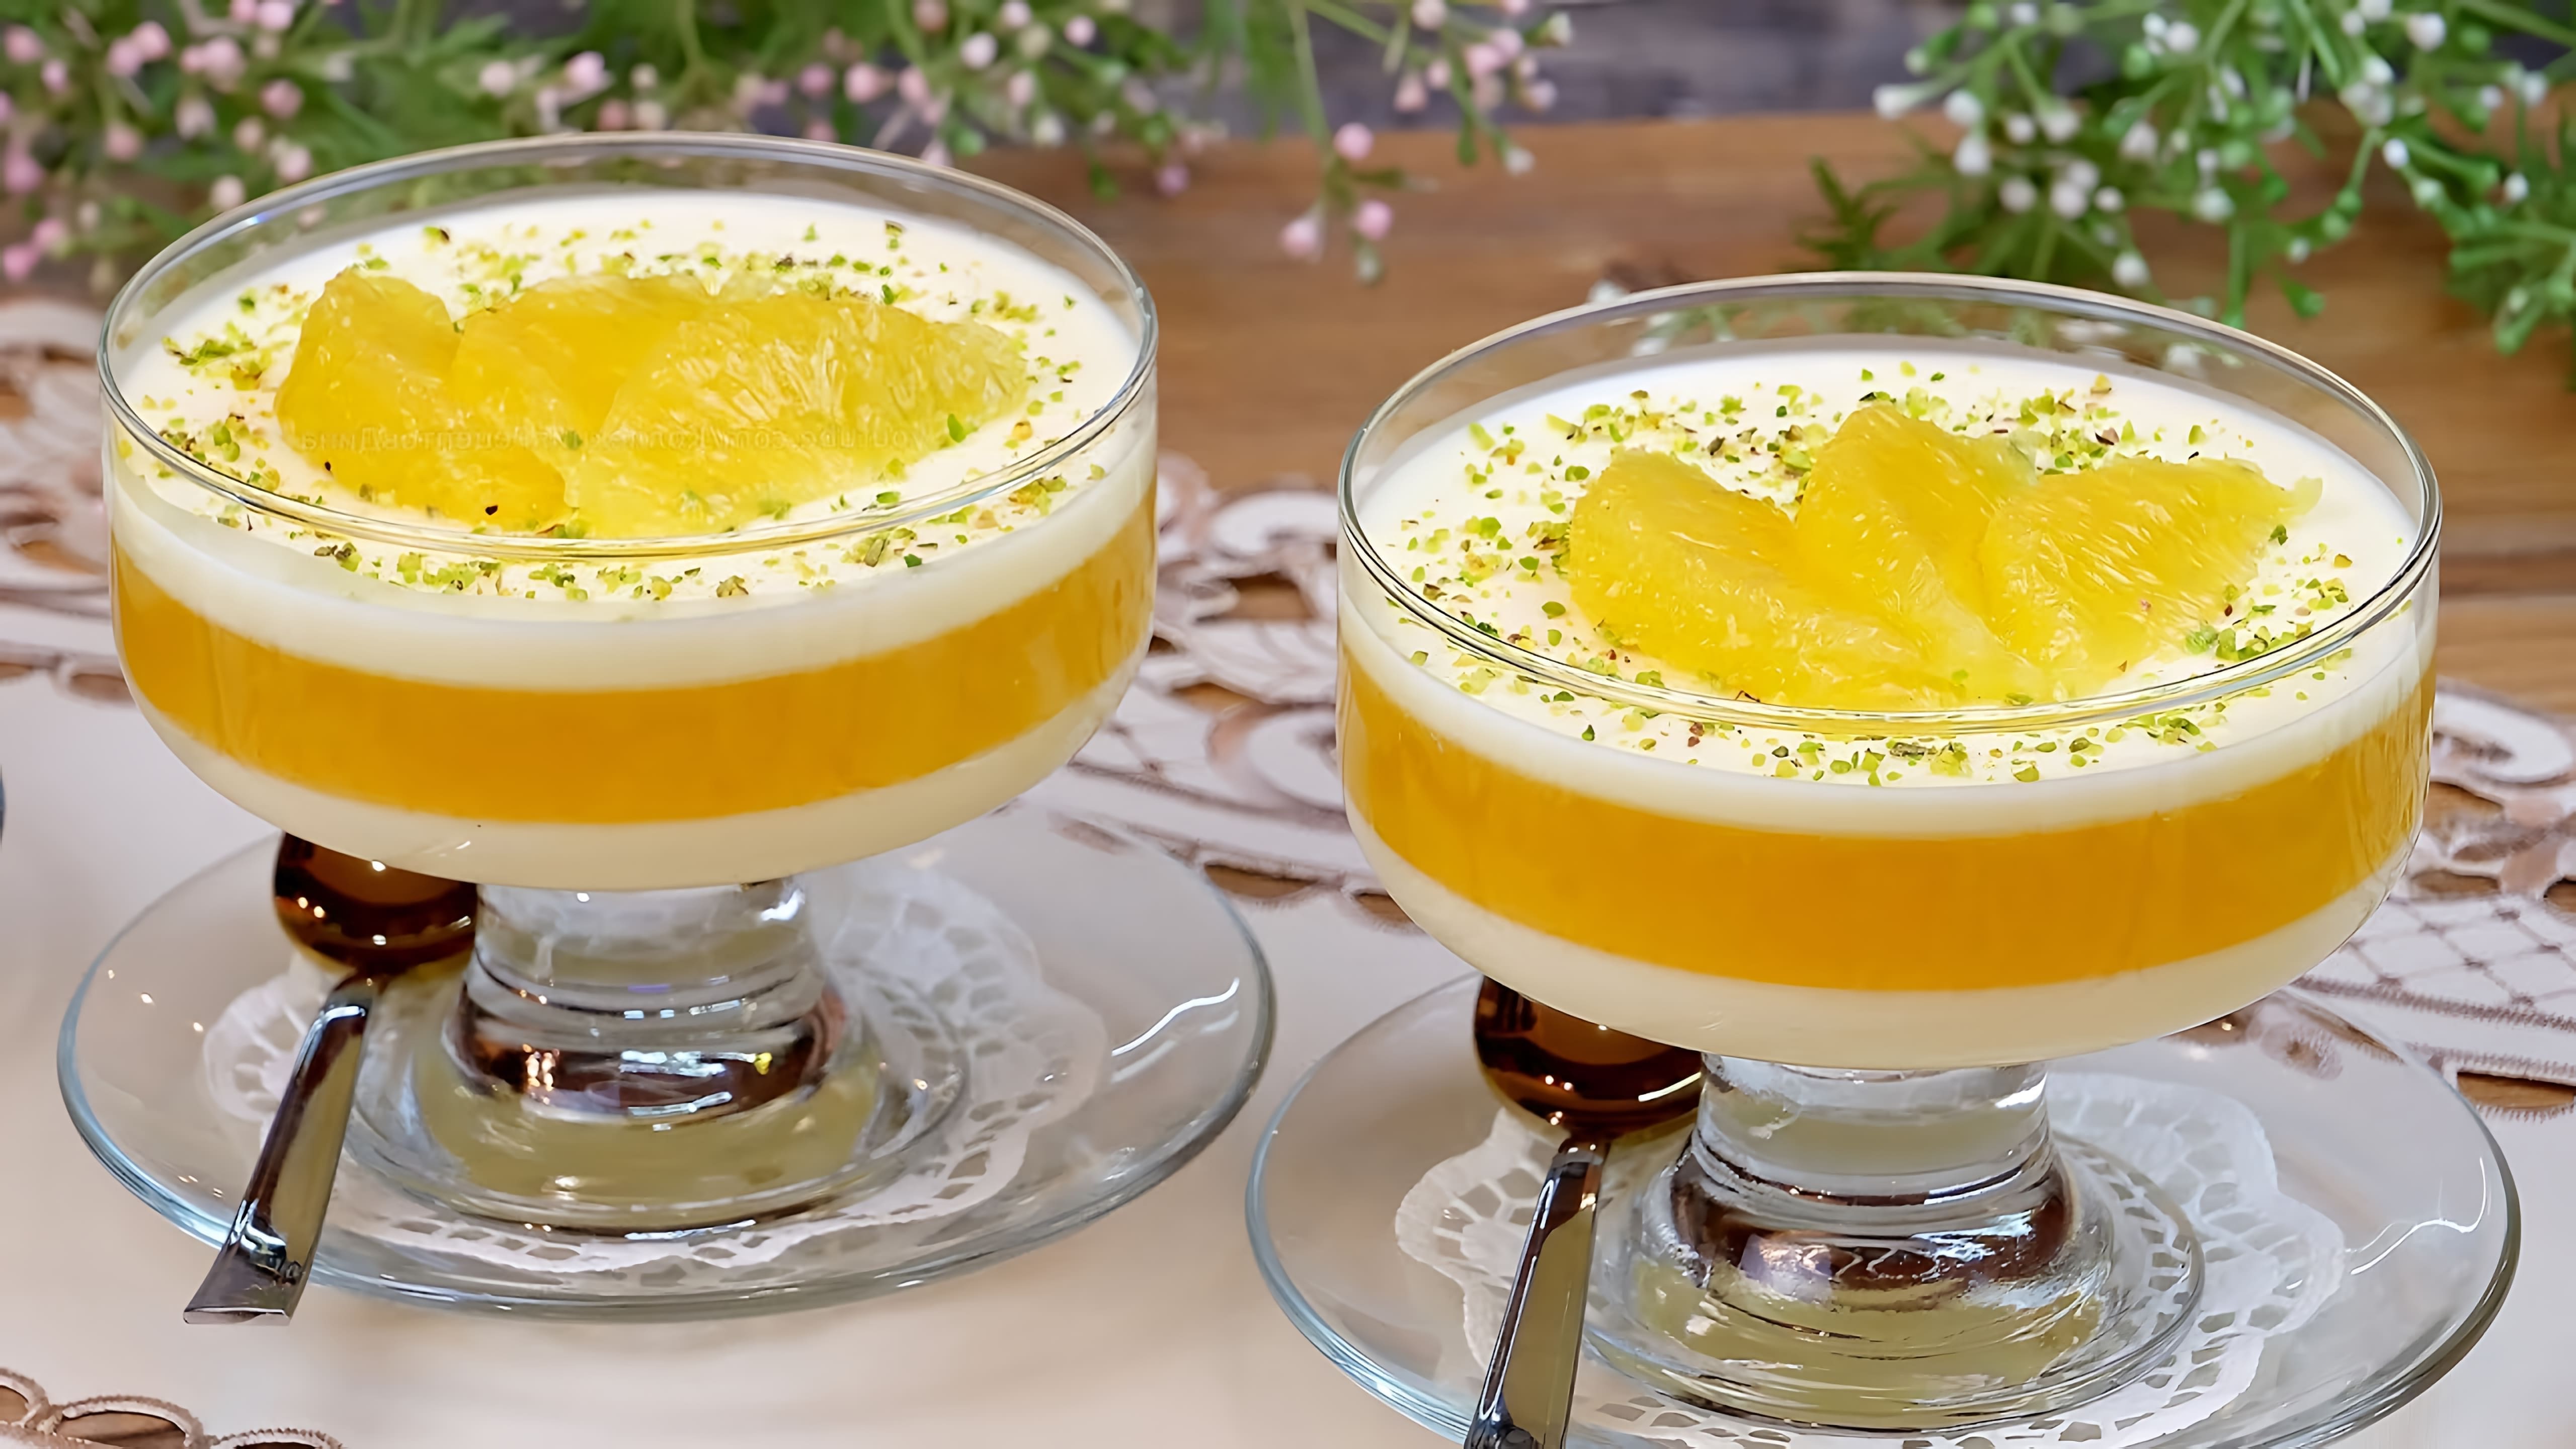 В этом видео Дина показывает, как приготовить освежающий сливочно-апельсиновый десерт